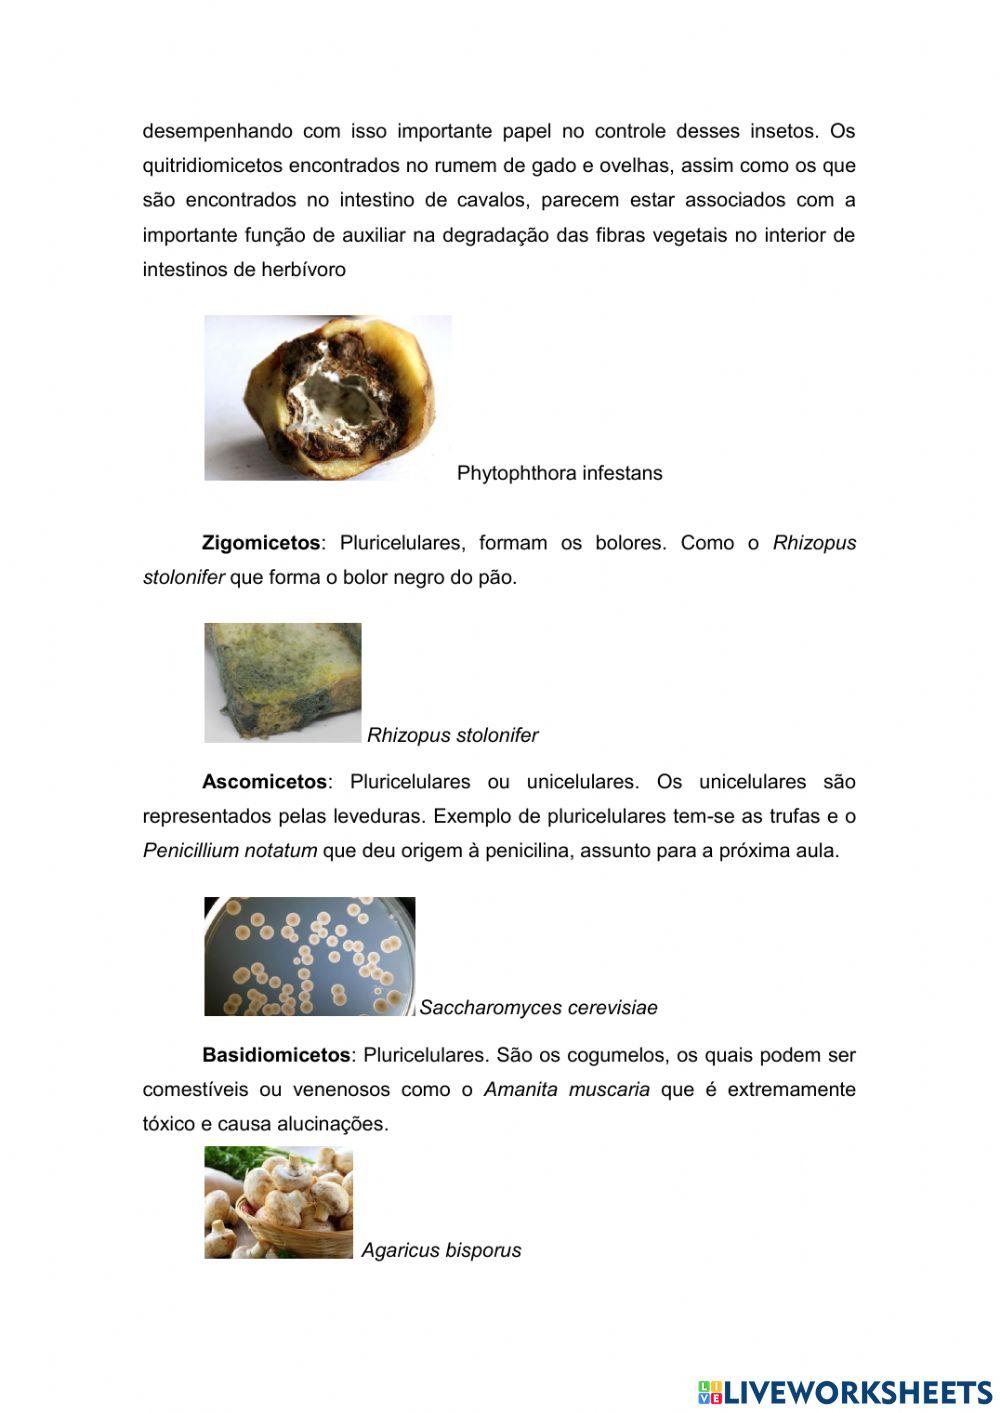 Classificação e modo de vida dos fungos